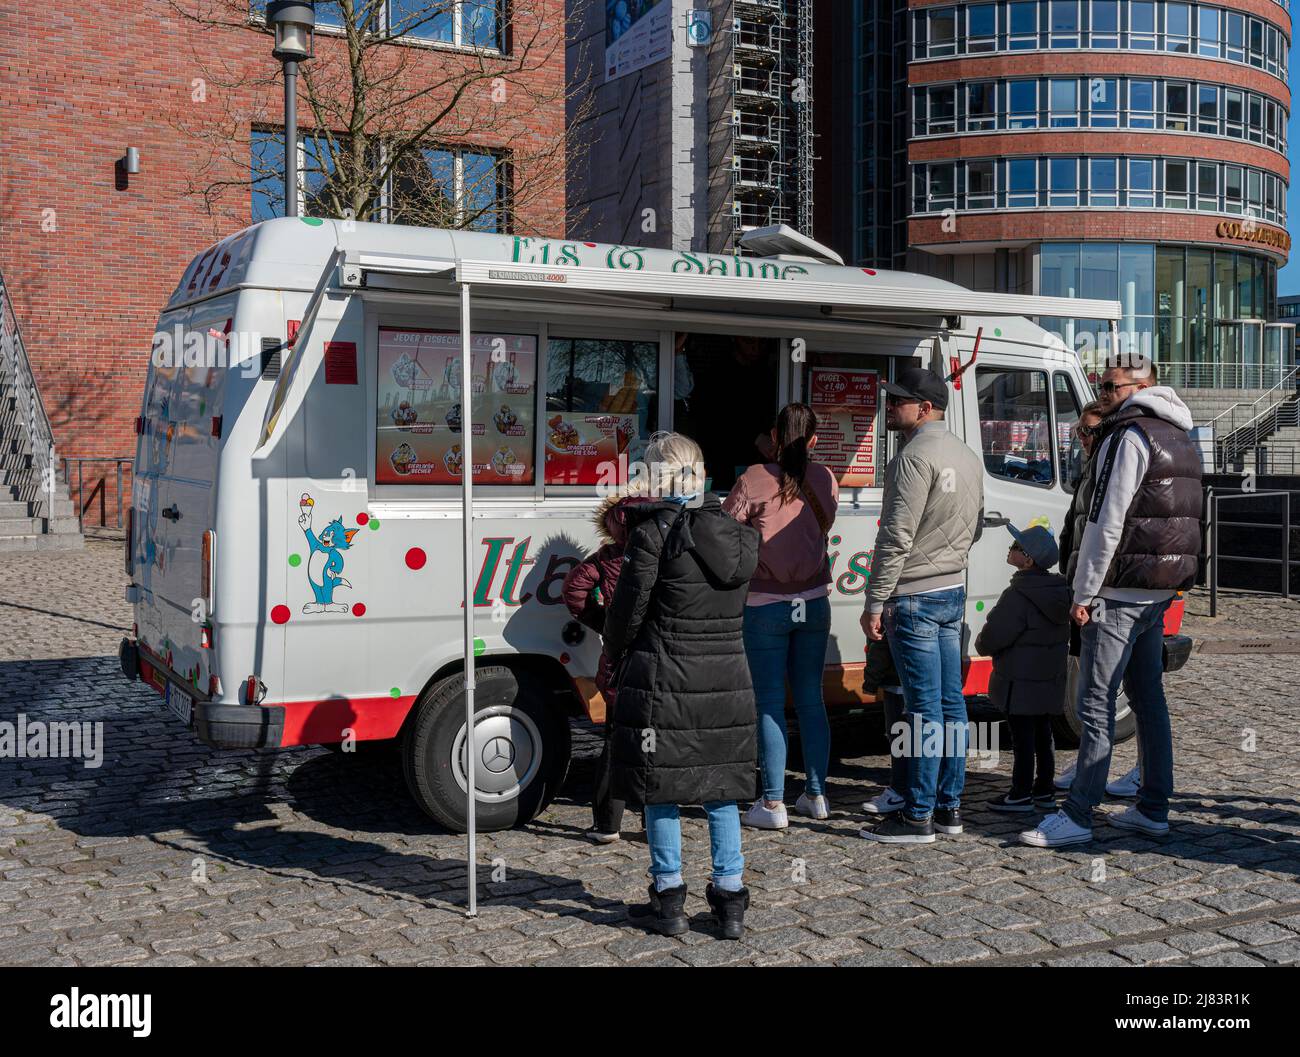 Mobiler Eisverkäufer in der Hamburger HafenCity, Hamburg, Deutschland  Stockfotografie - Alamy